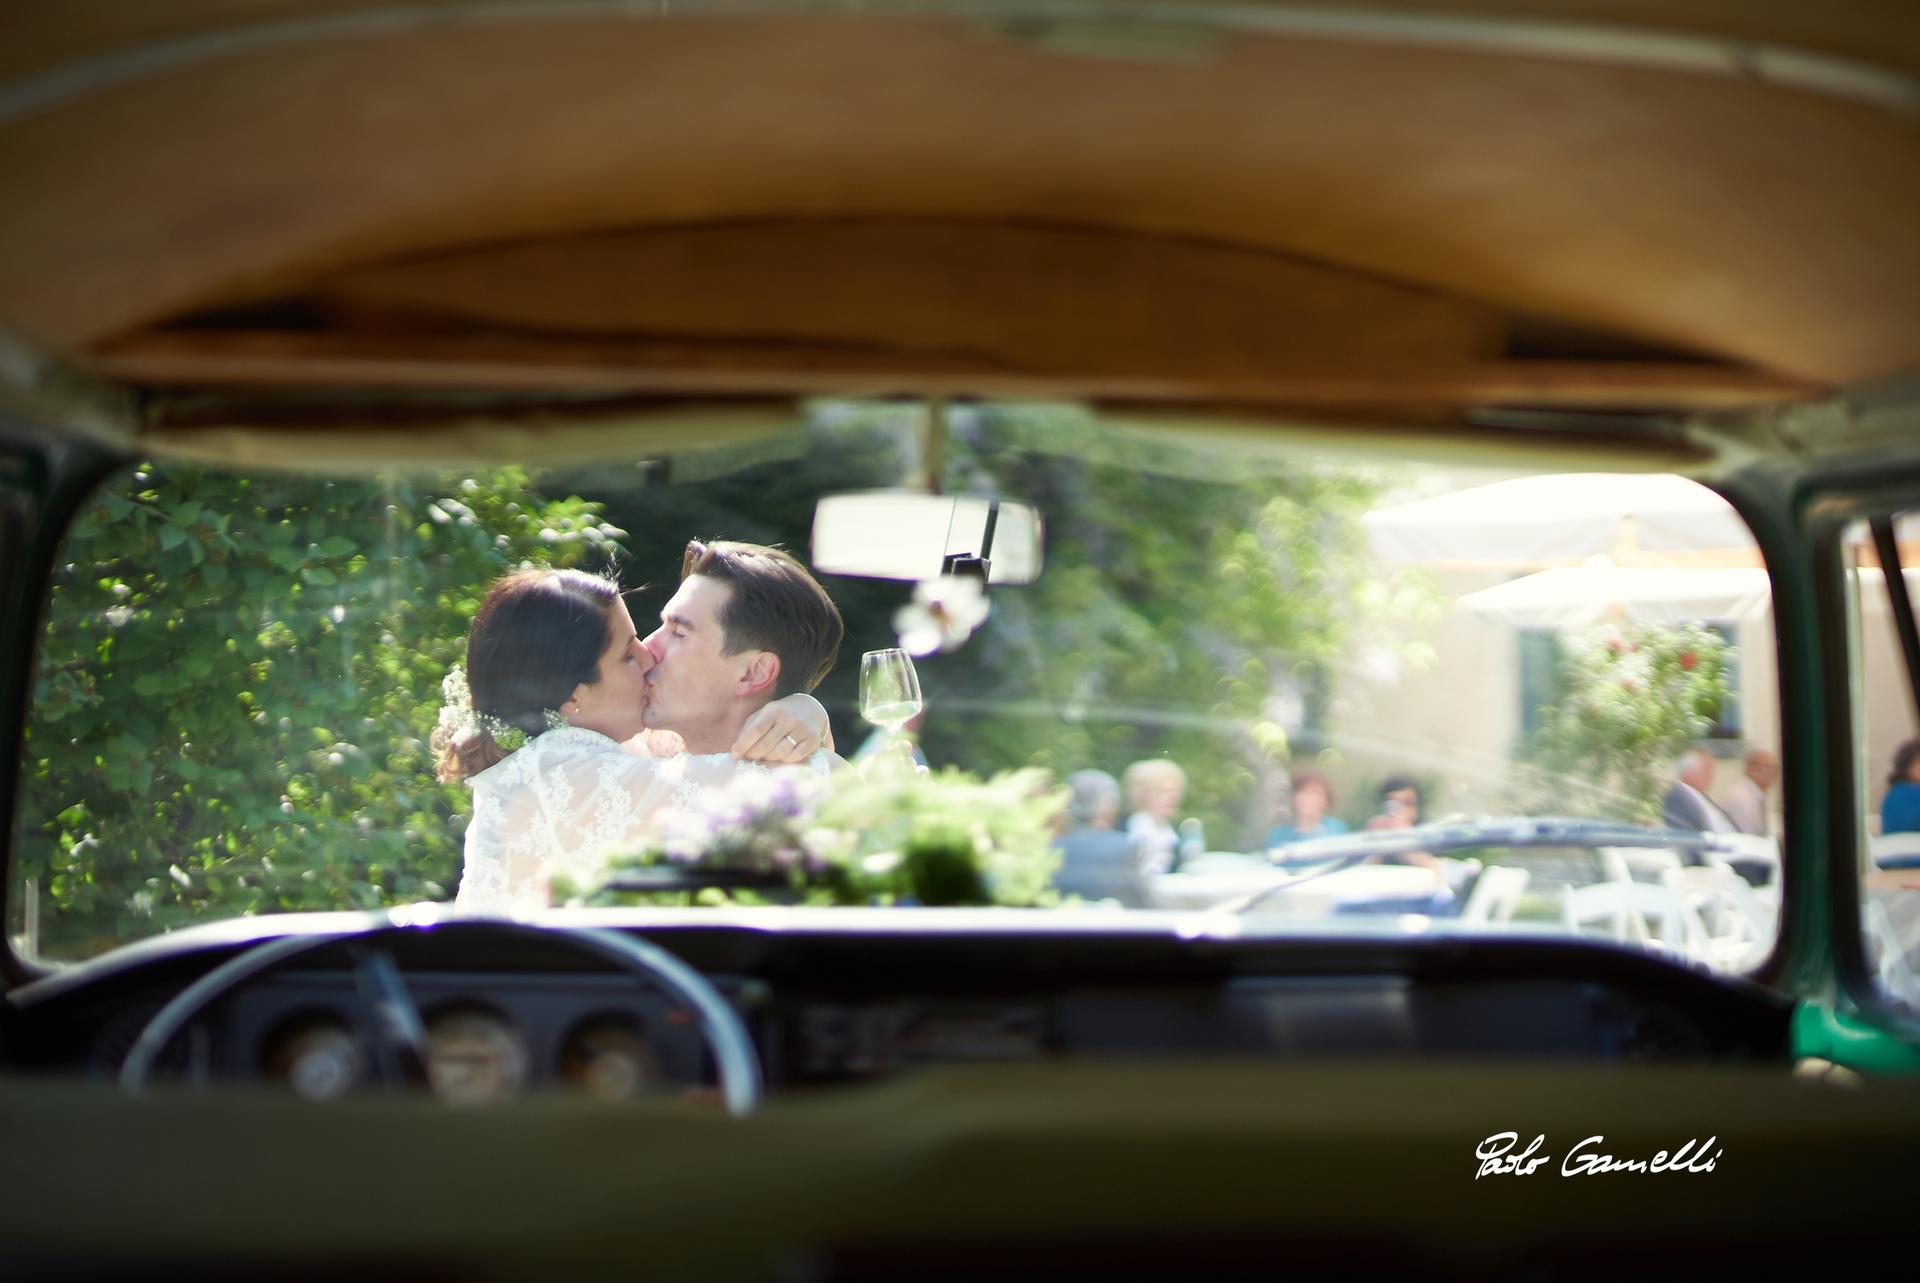 Auto per Matrimonio, Auto Noleggio, Wolkswagen matrimonio, Fotografo per Matrimonio, Treviso, Veneto, Badoere, Abito nuziale, 